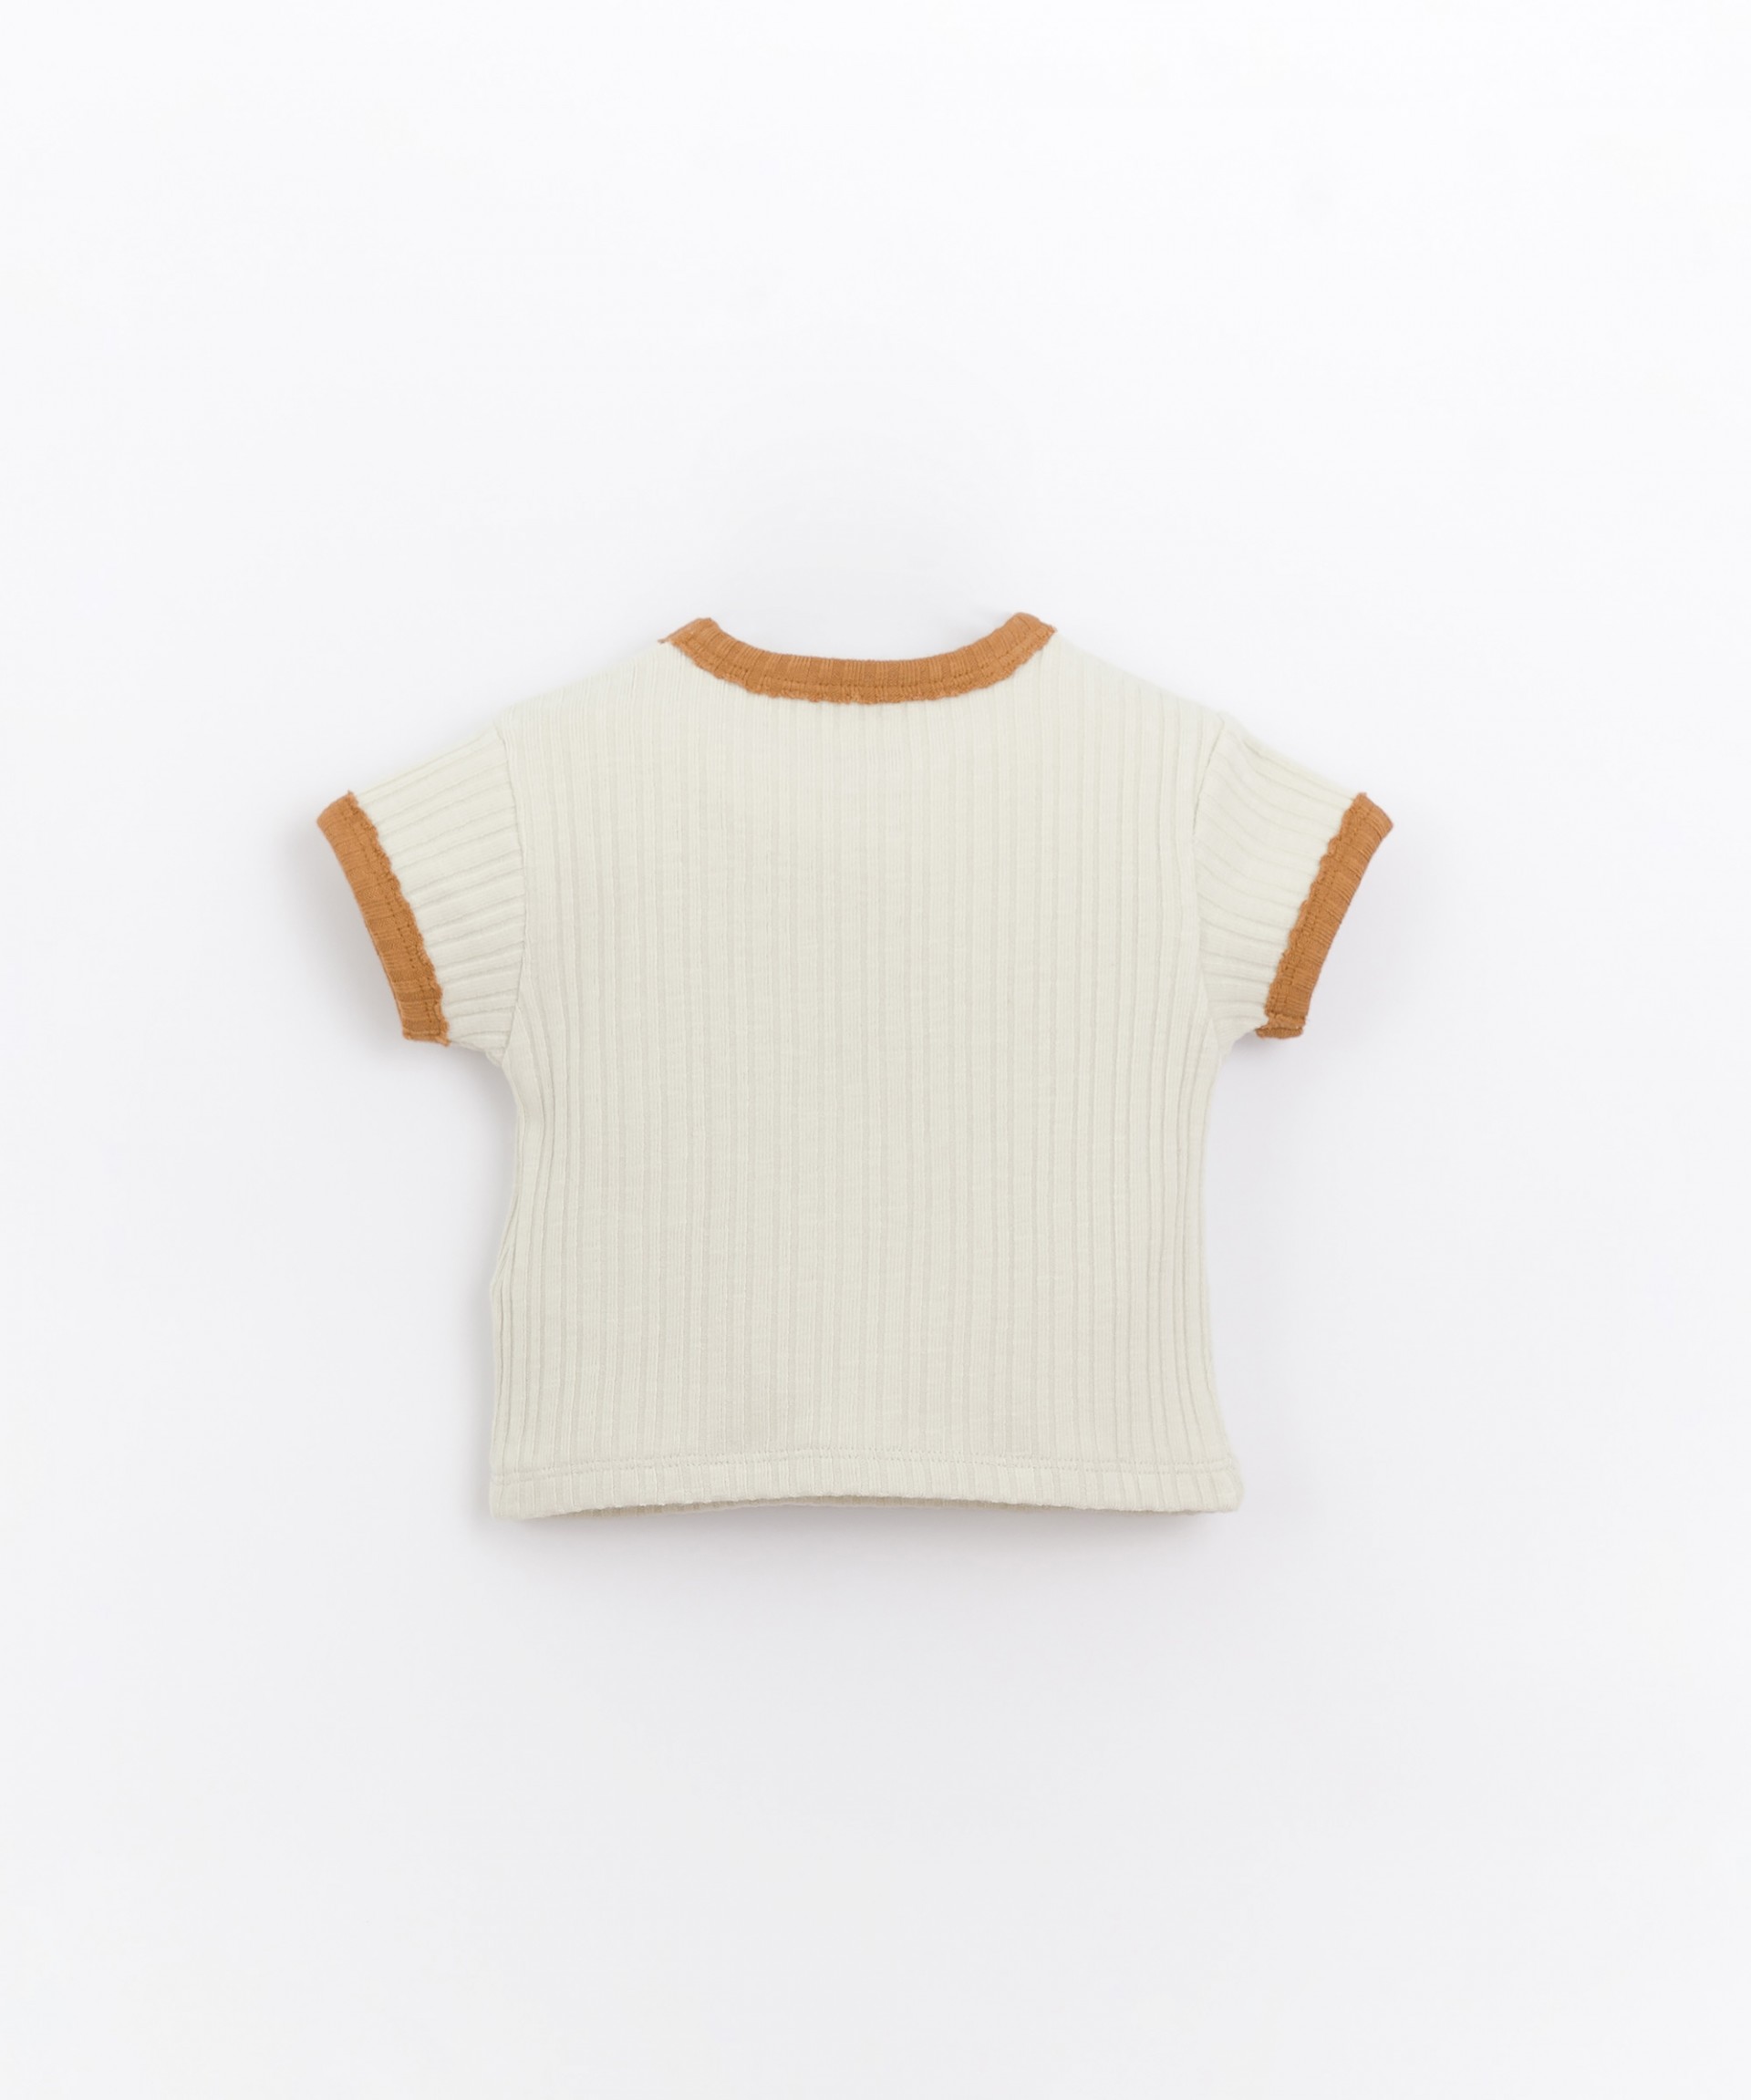 T-shirt com nervuras em algodão orgânico | Basketry